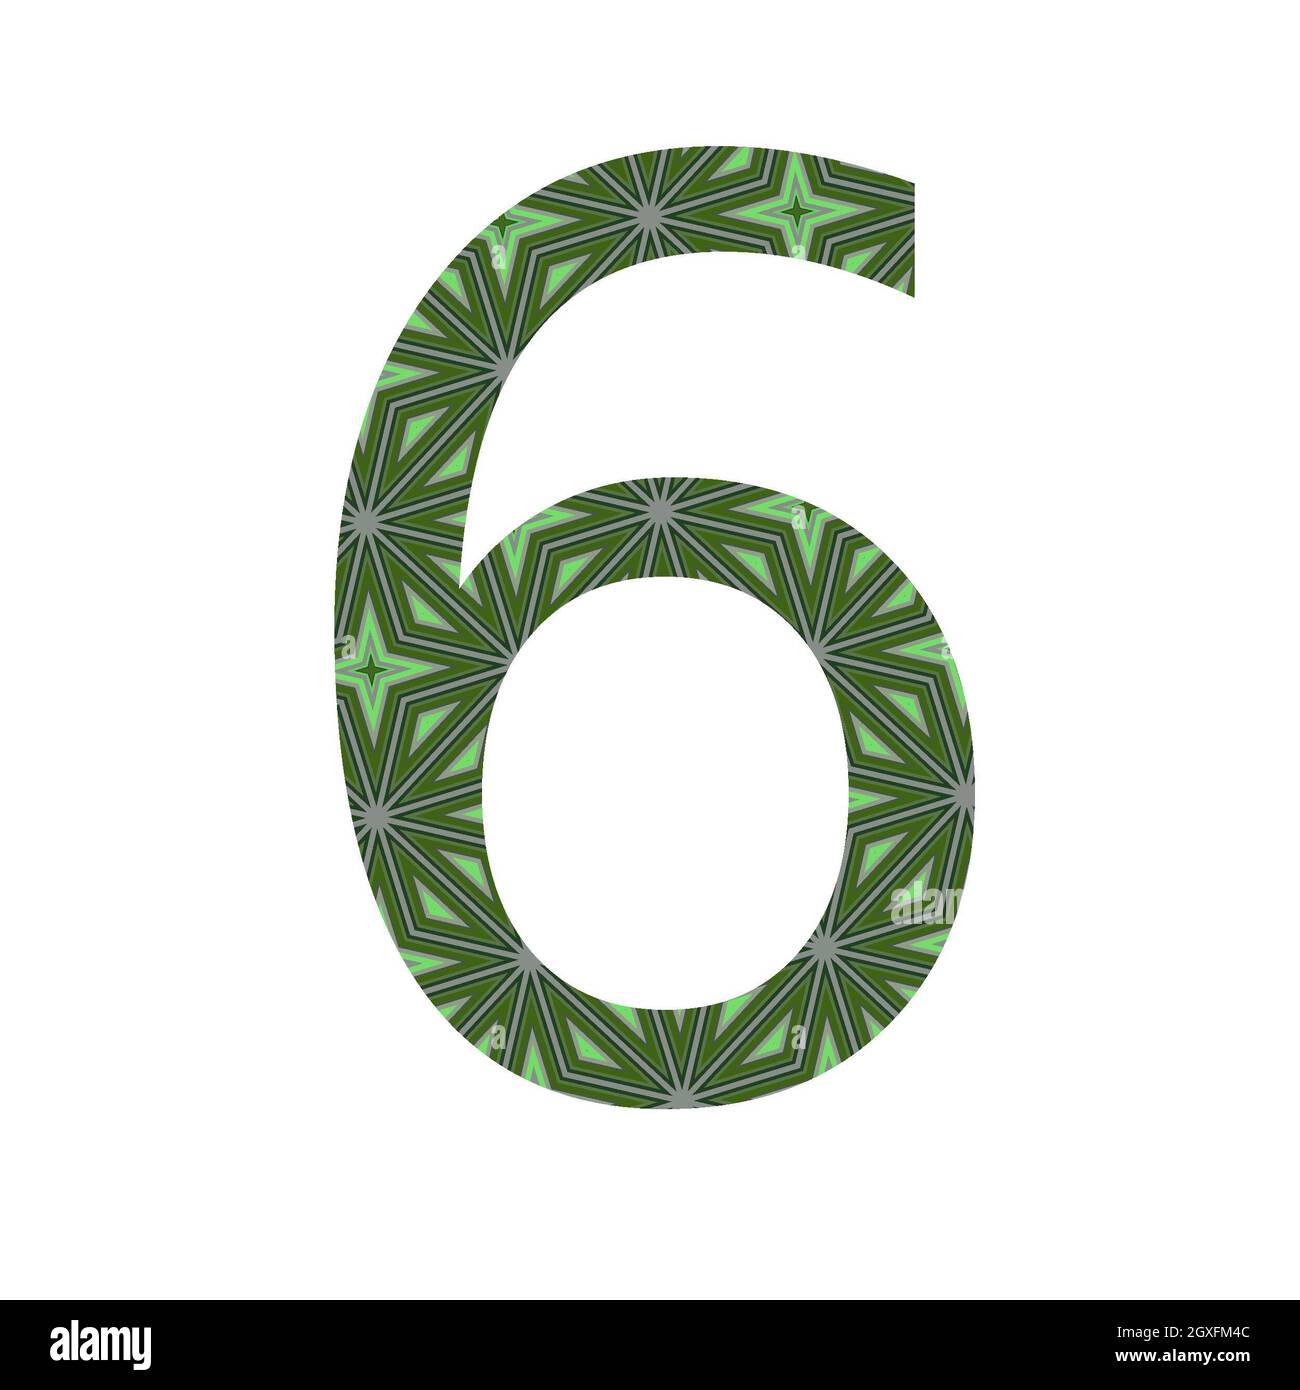 Nummer 6 des Alphabets mit einem Muster aus grünen Sternen, isoliert auf weißem Hintergrund Stockfoto